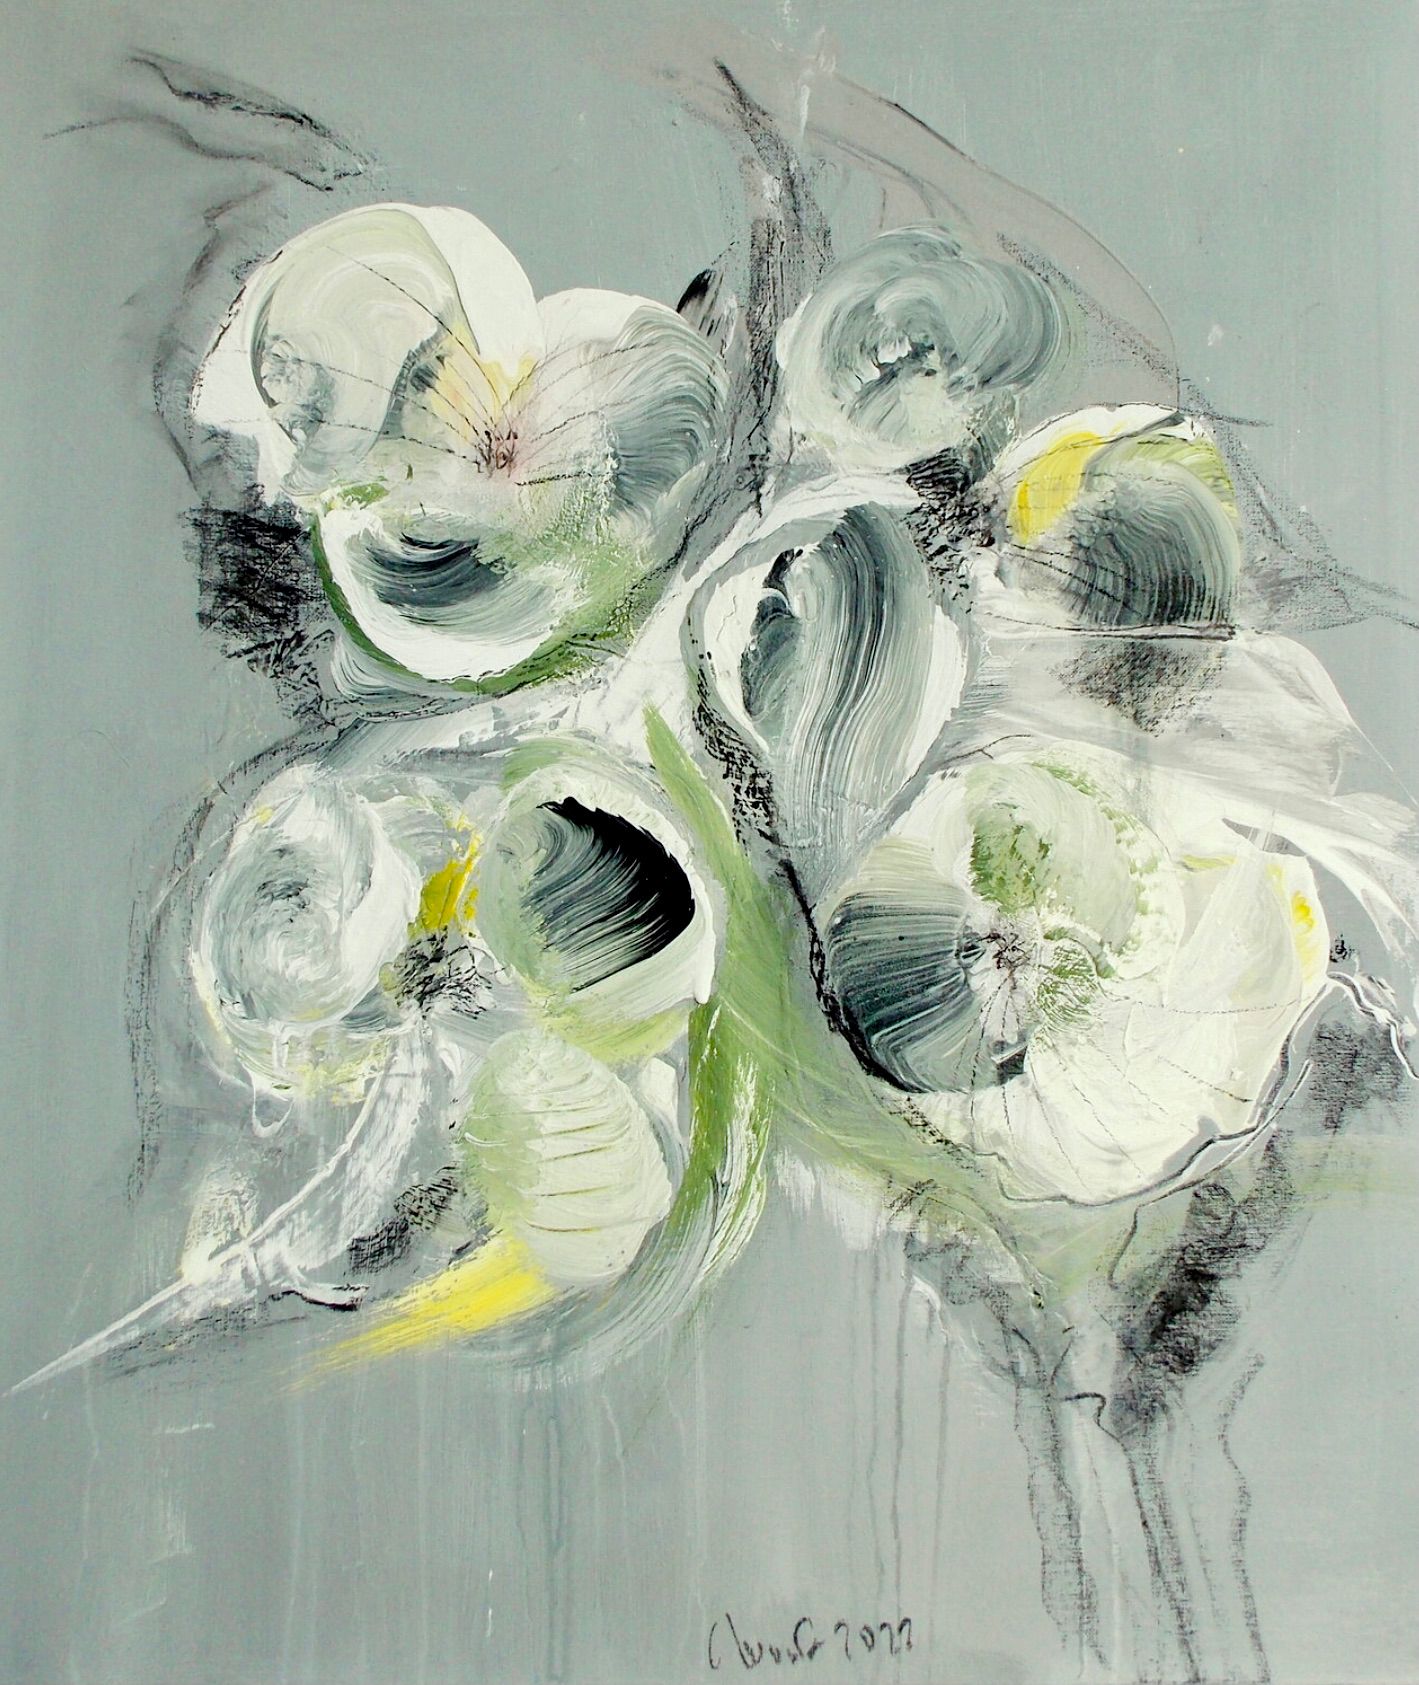 Dans la "Blumenrausch 2" de Christa Haack, peinture florale expressionniste abstraite, les couleurs beige, vert et noir dominent.